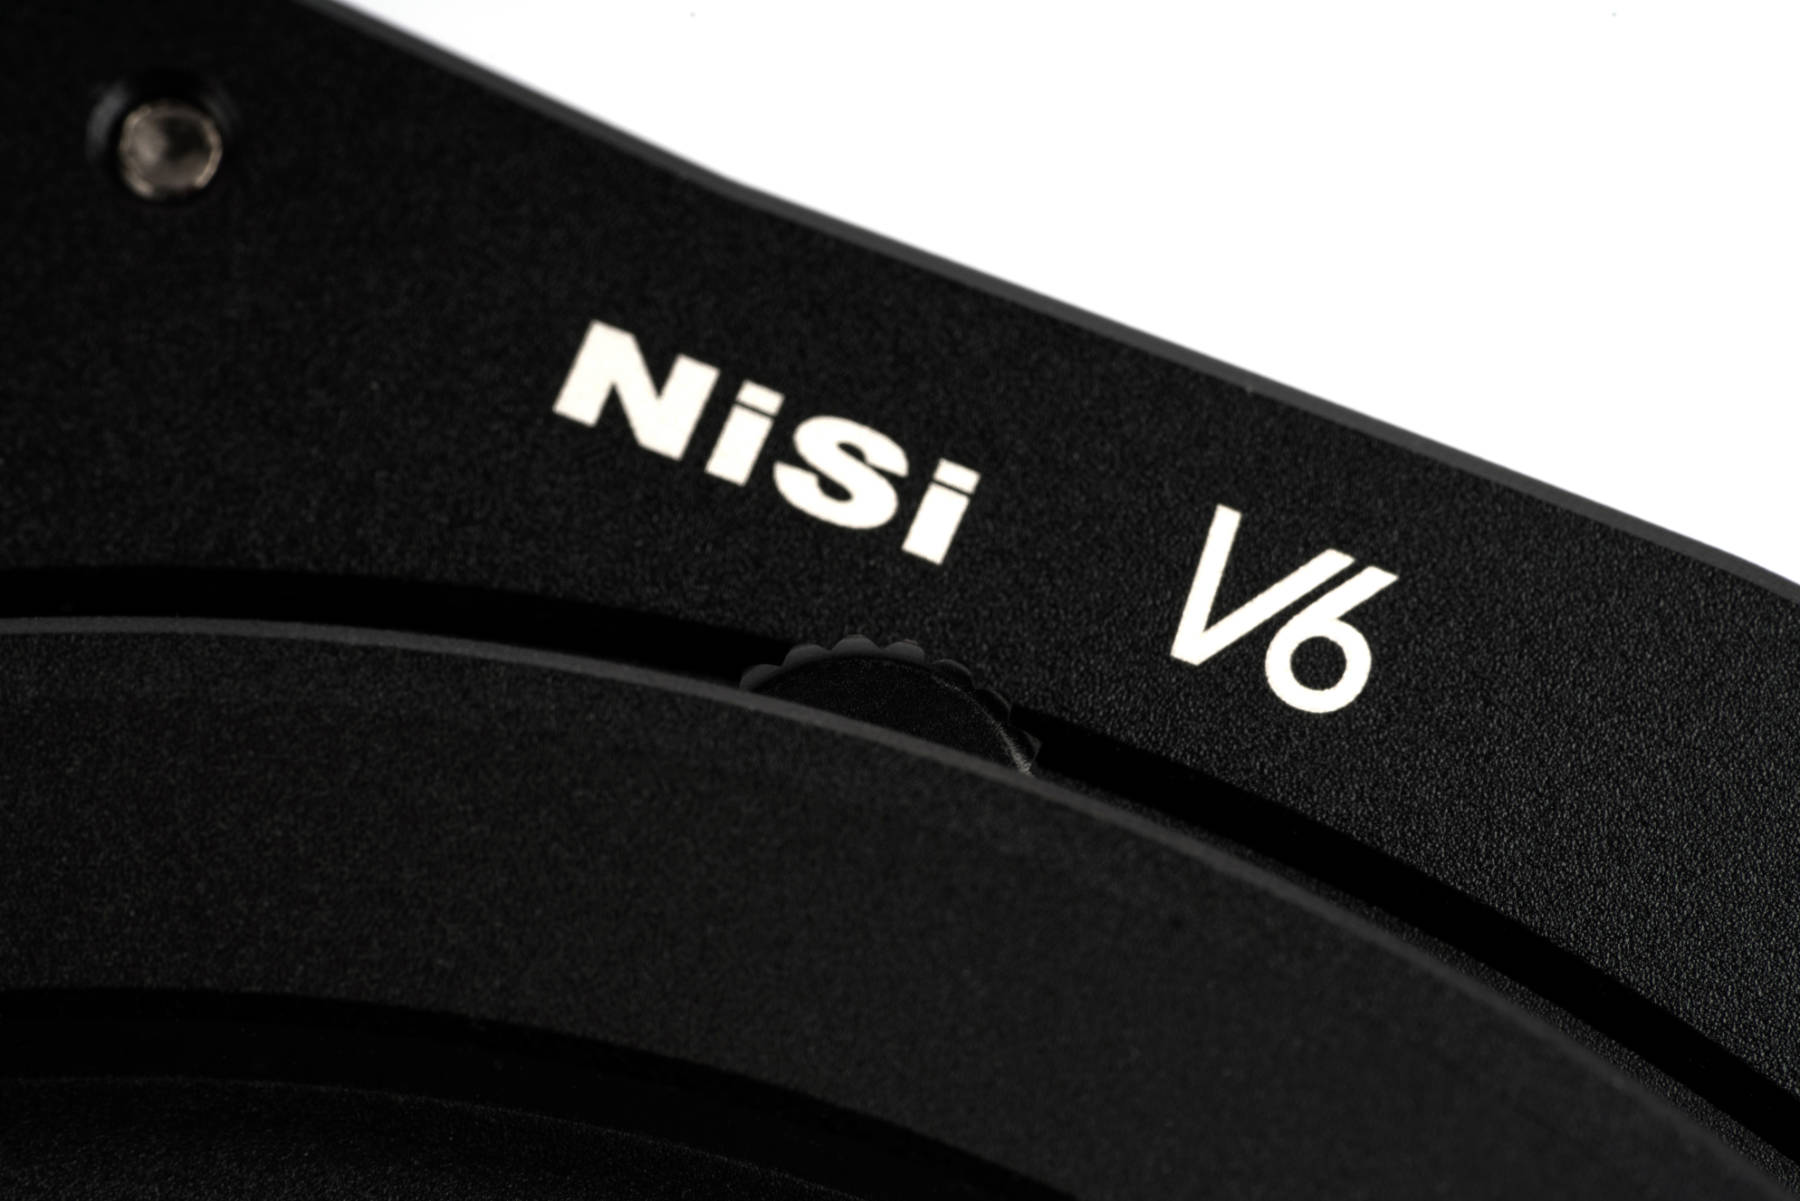 NiSi NC Landscape Polariser CPL for 100mm System NiSi V5 & V5-Pro & V6 Filter Holder